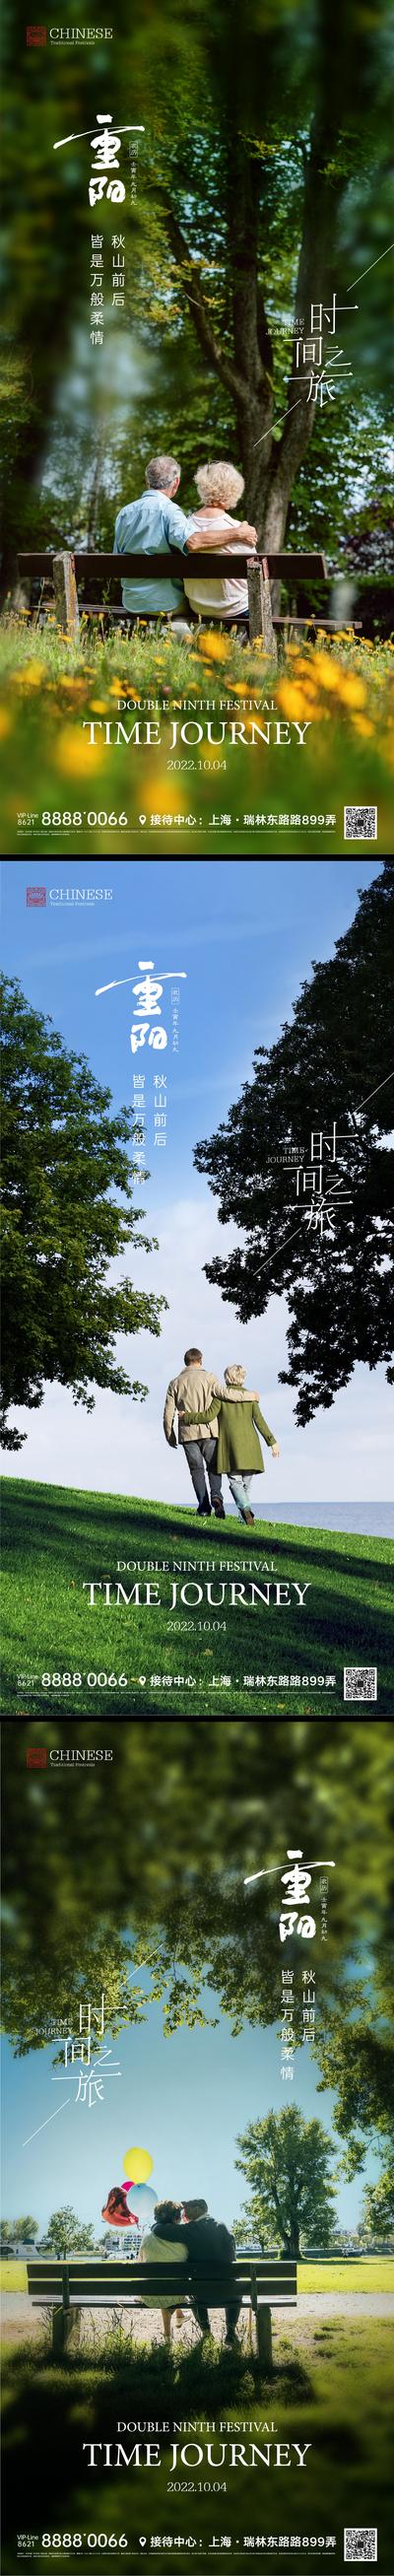 南门网 海报 中国传统节日 重阳节 老人 背影 公园 长椅